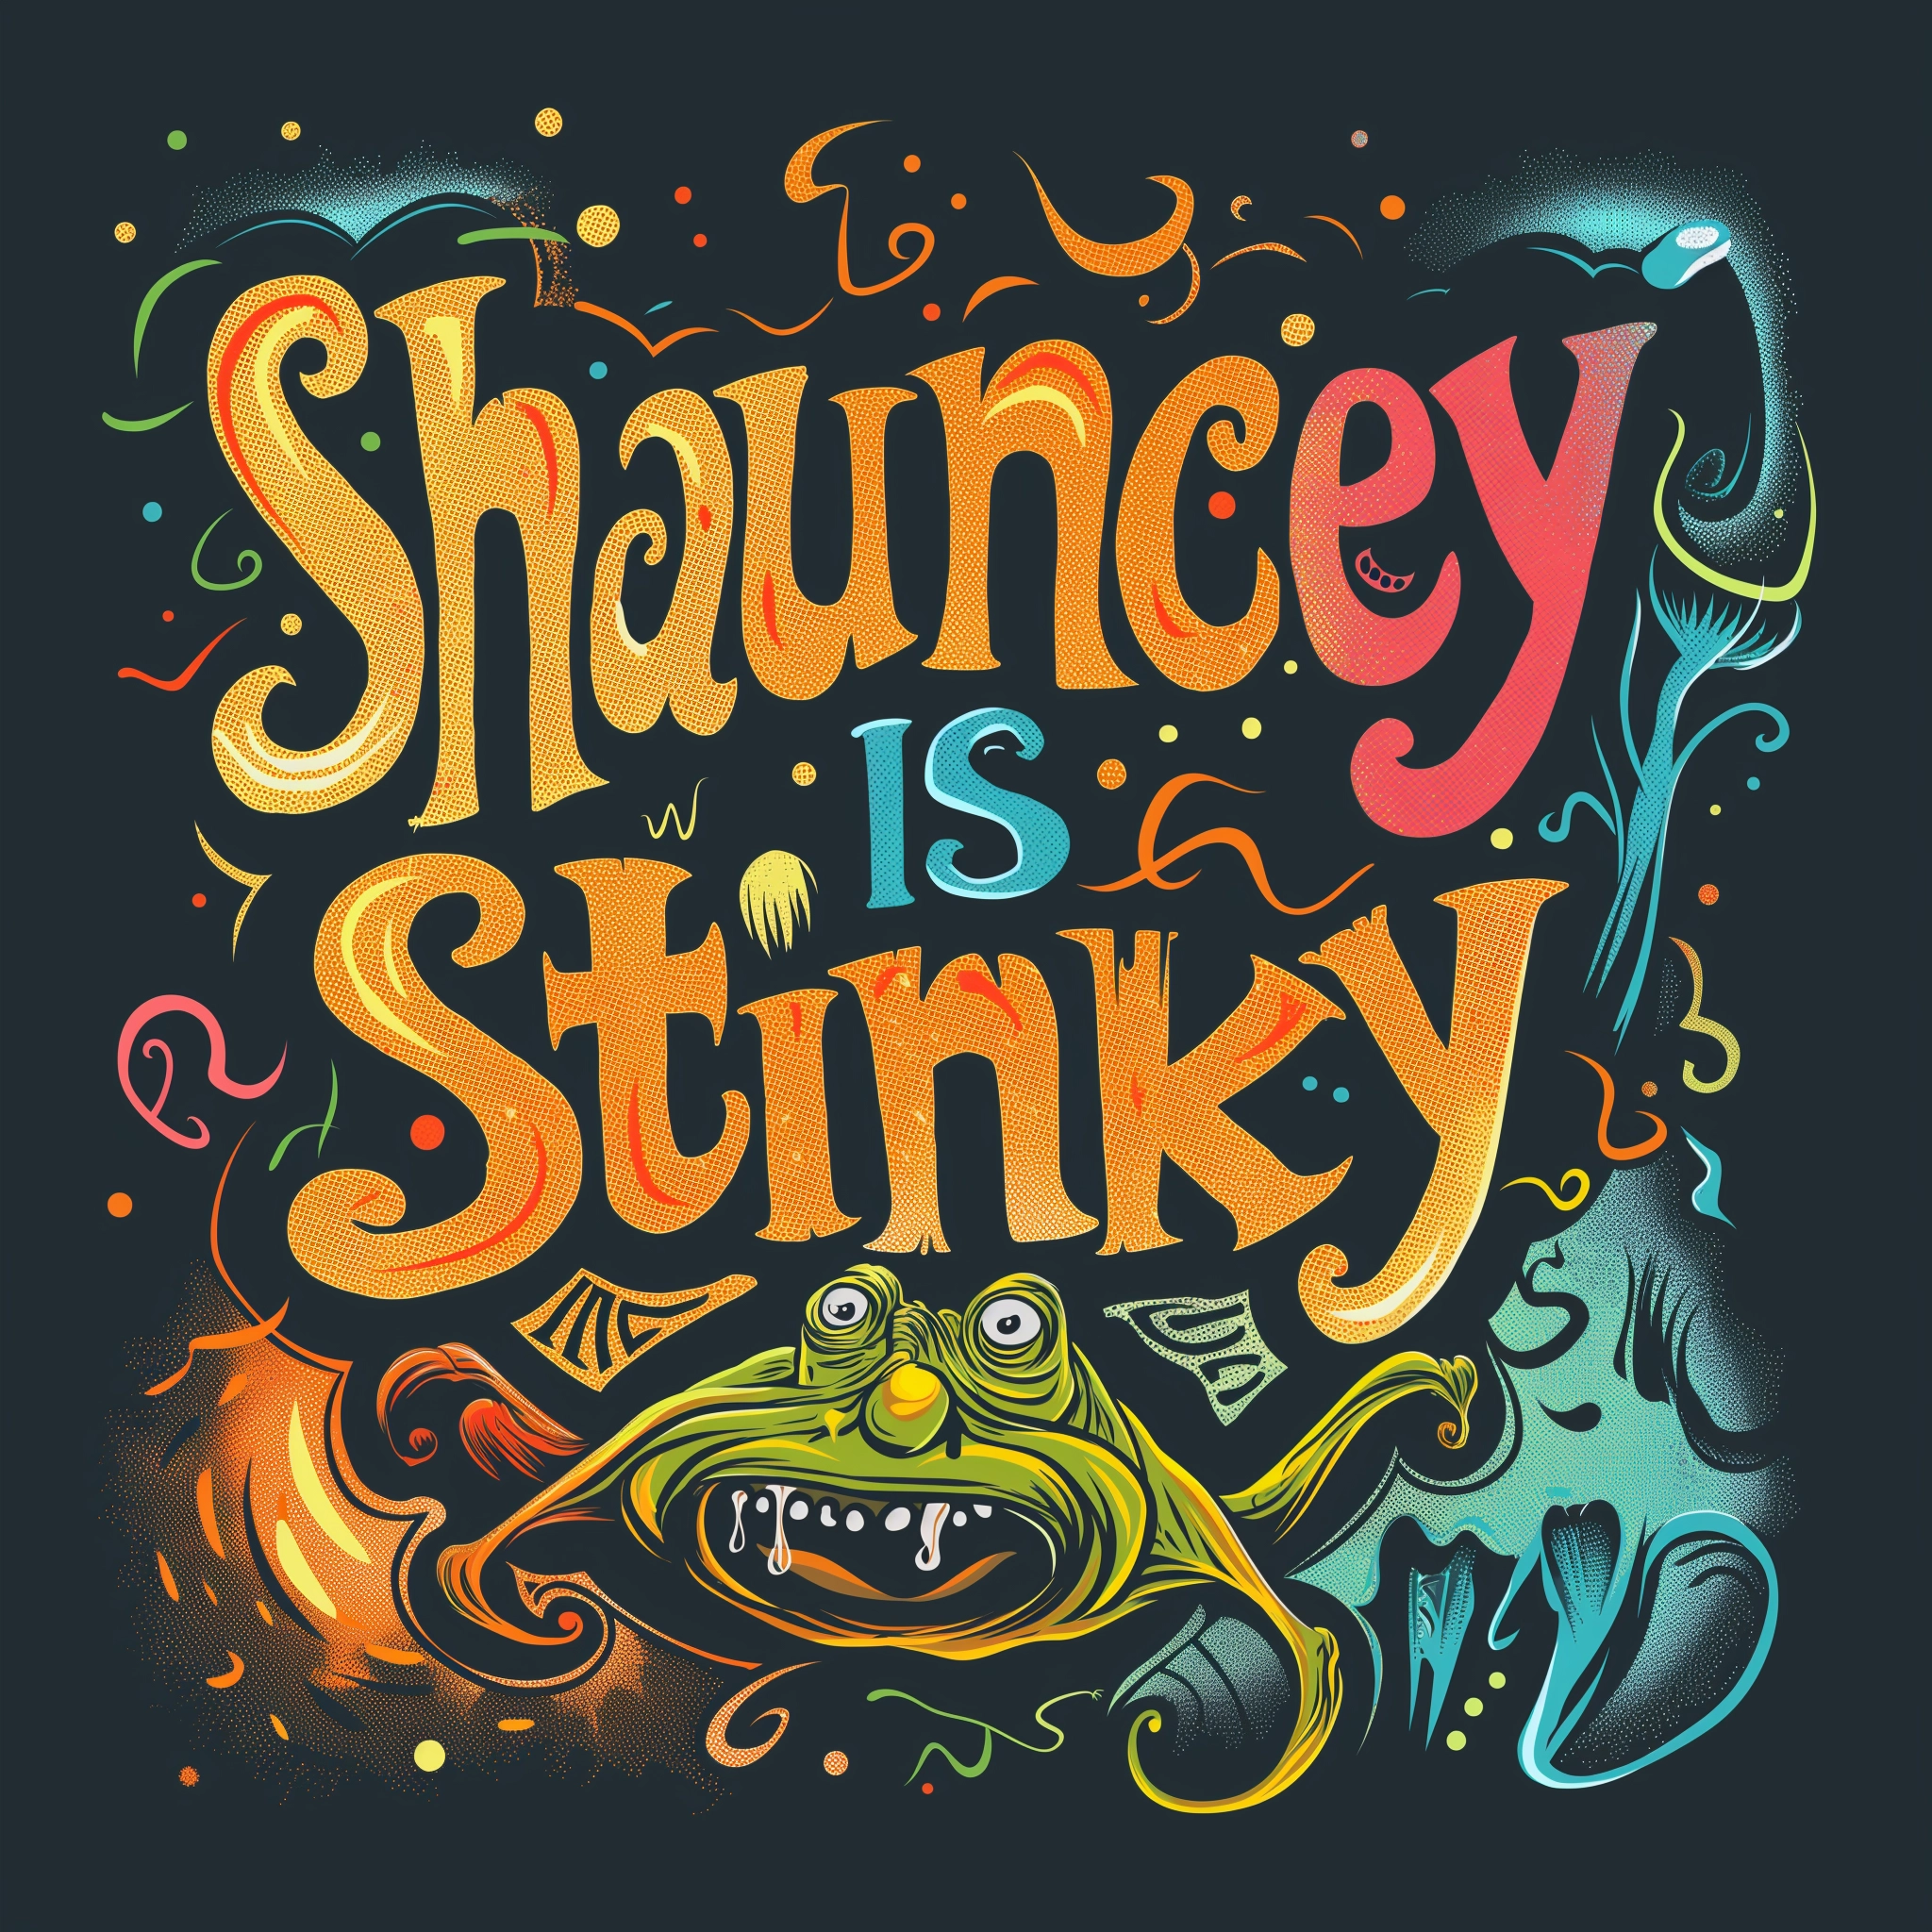 Shauncey is Stinky, it's true!